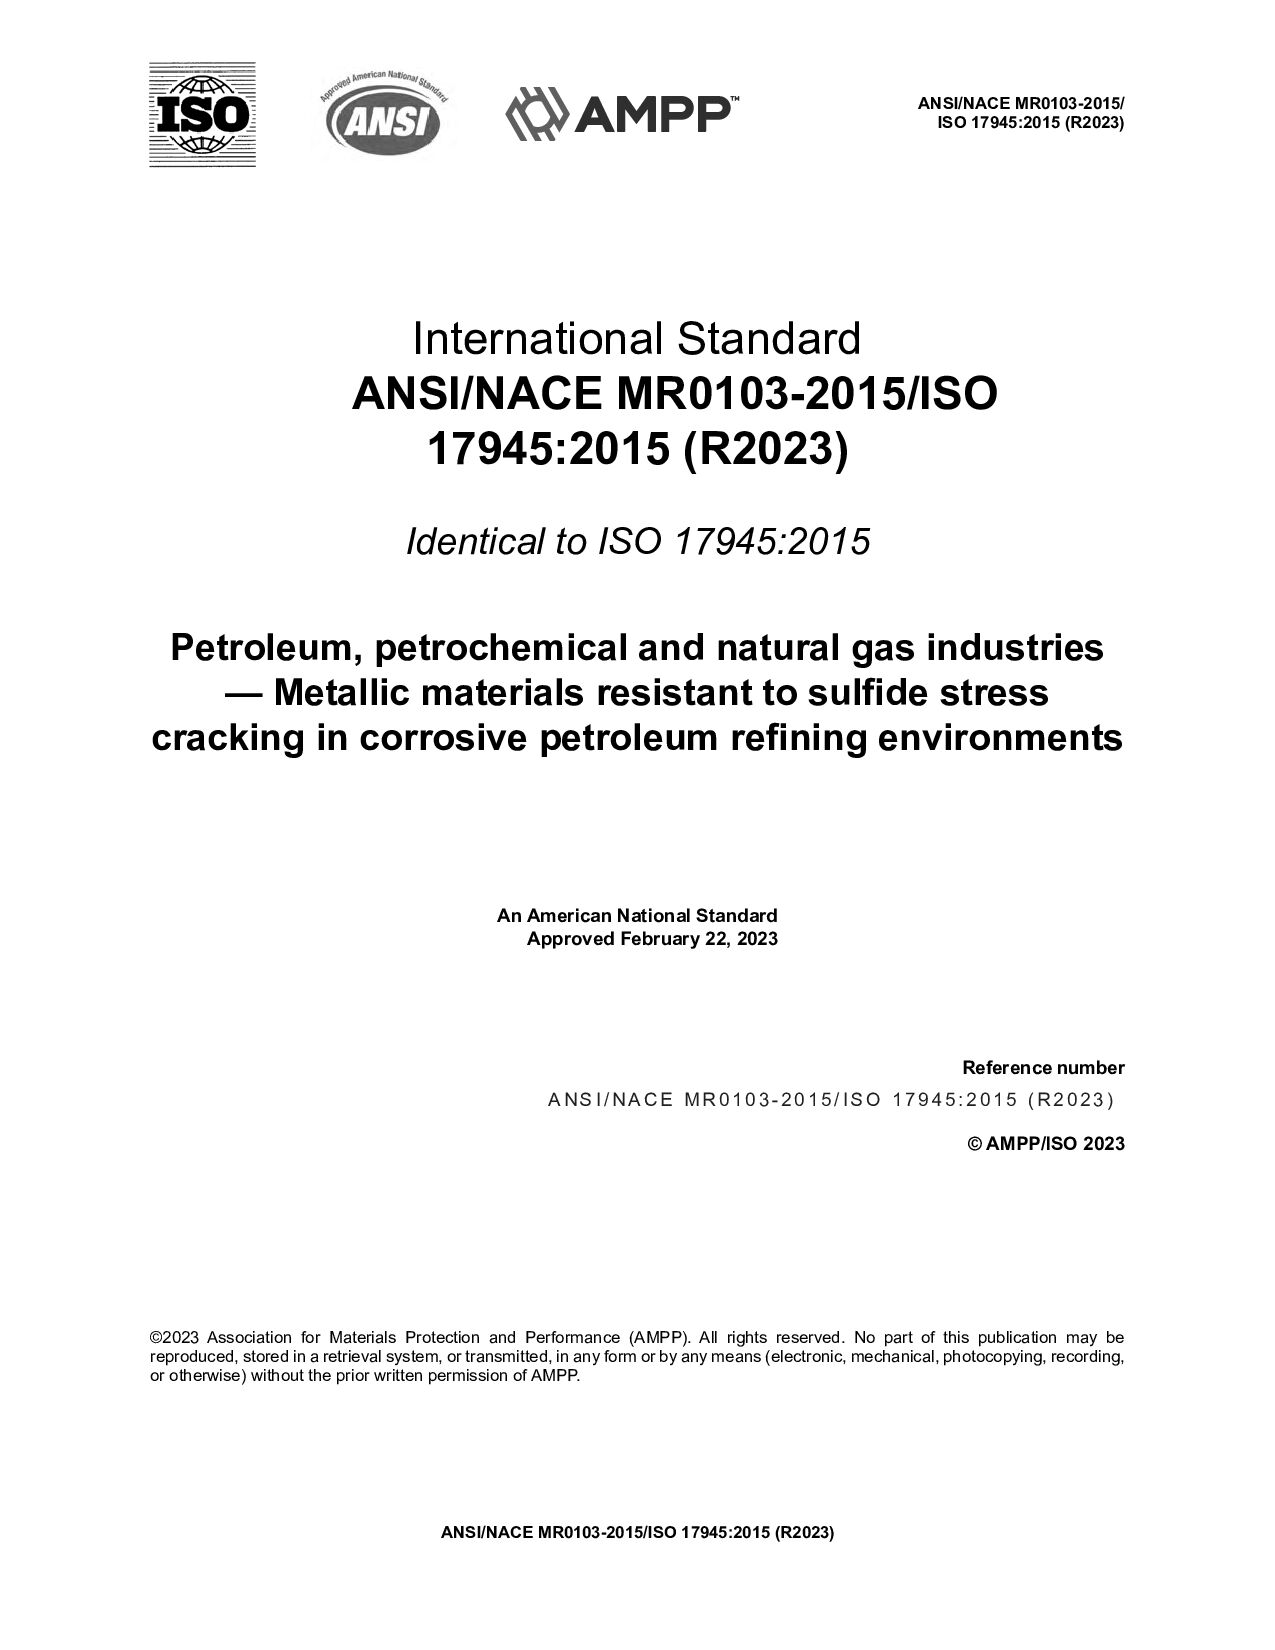 NACE MR0103-2015 (2023) ISO 17945-2015